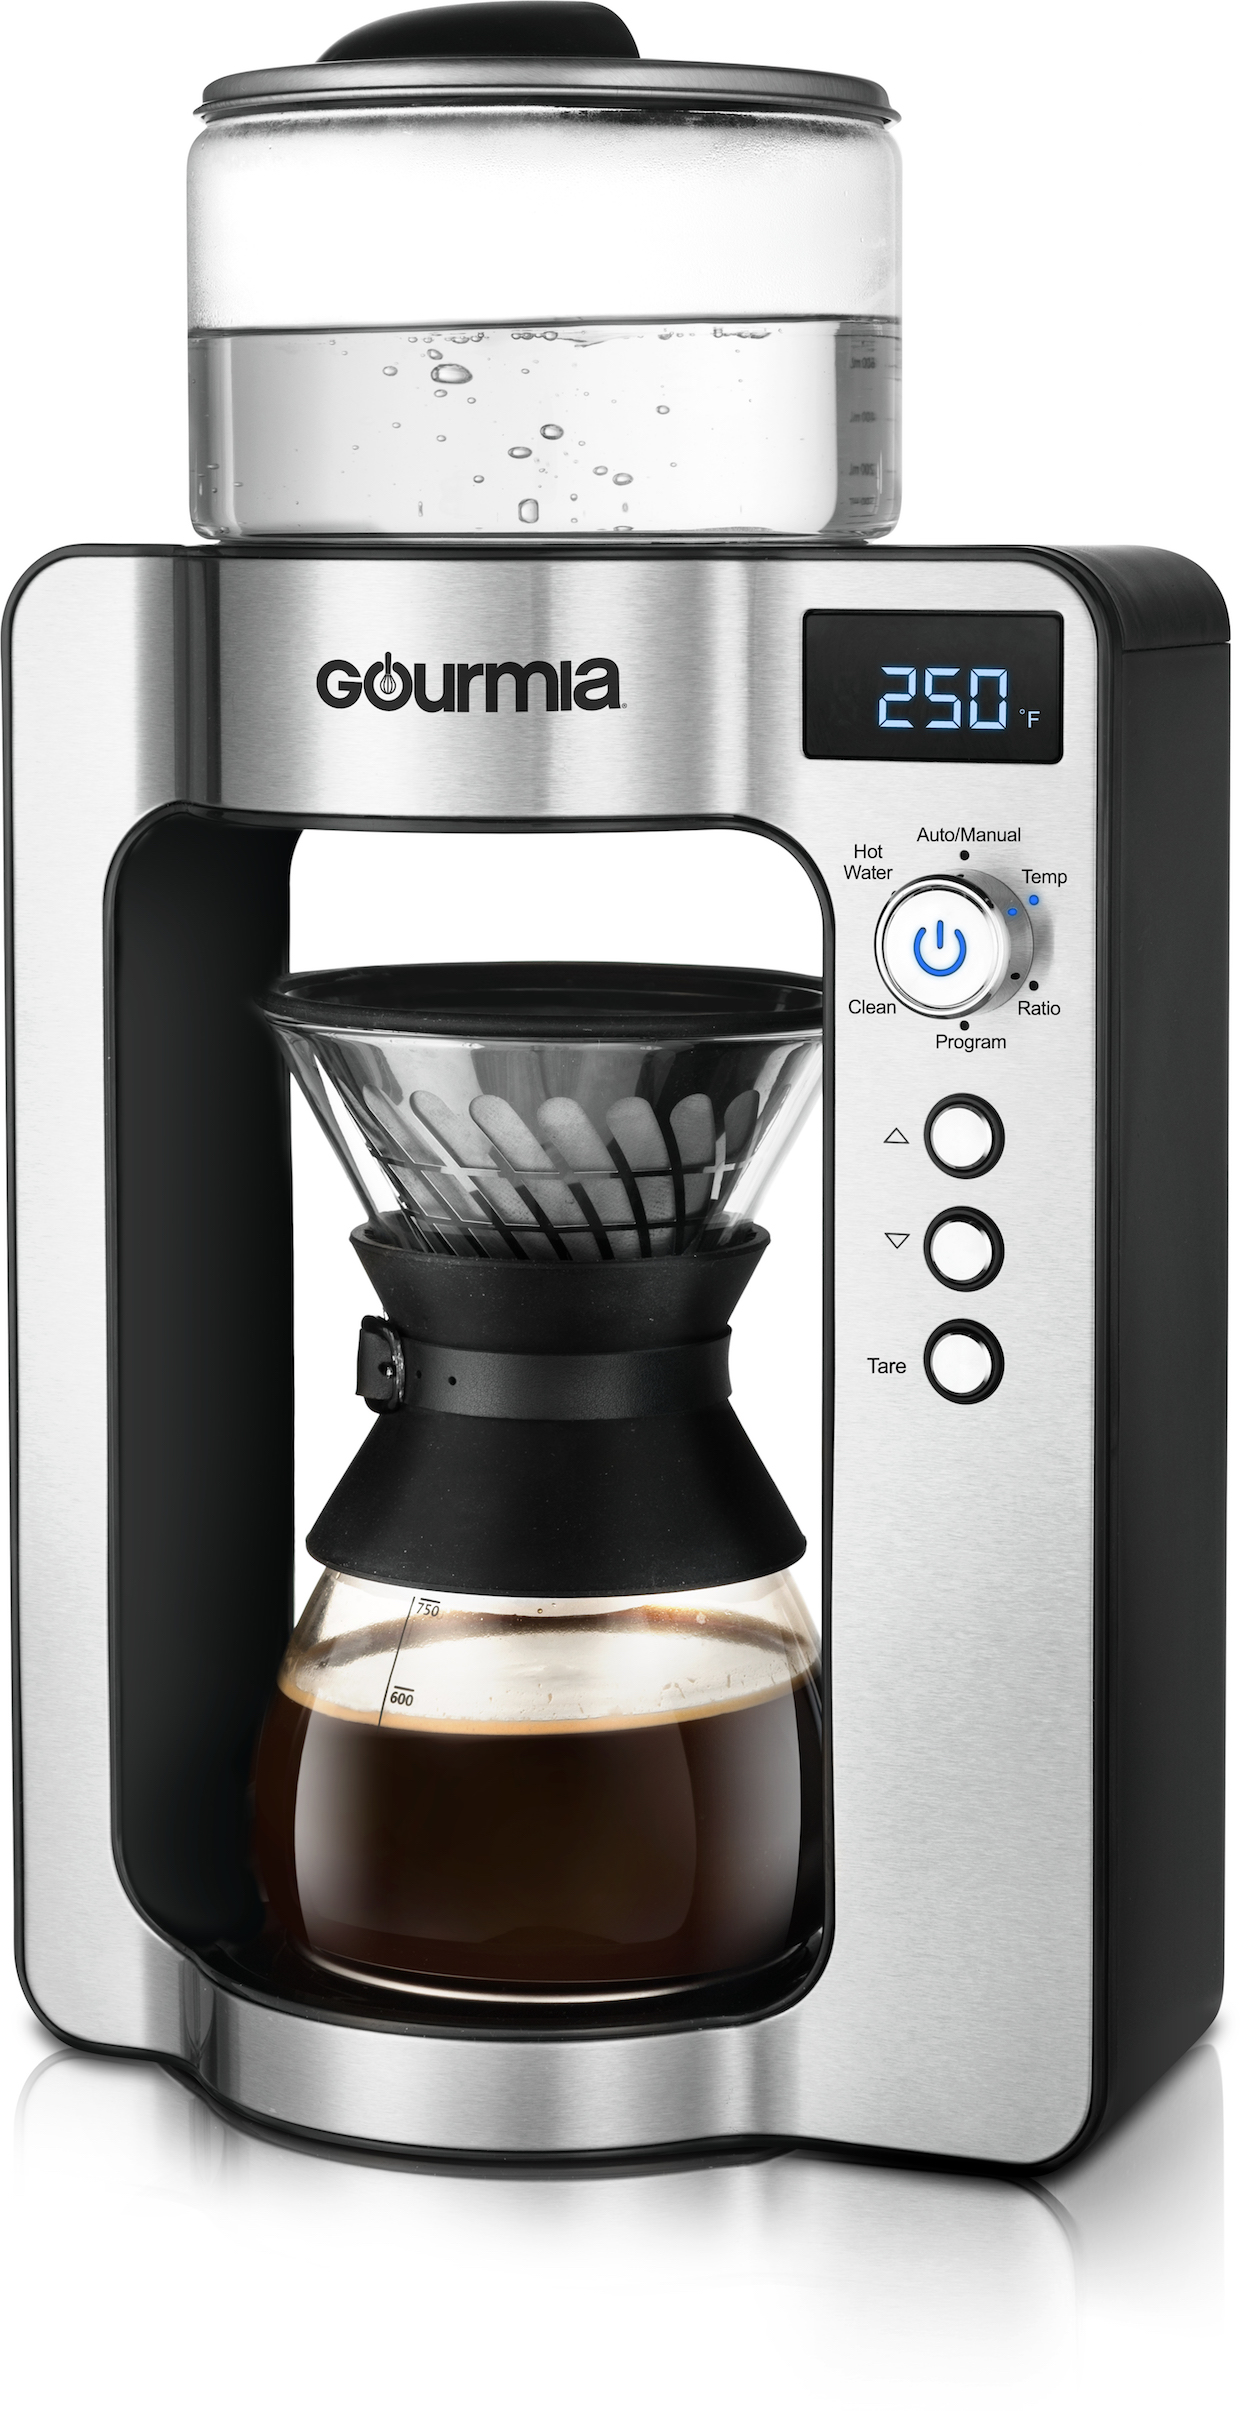 Gourmia coffee home brewing pourover